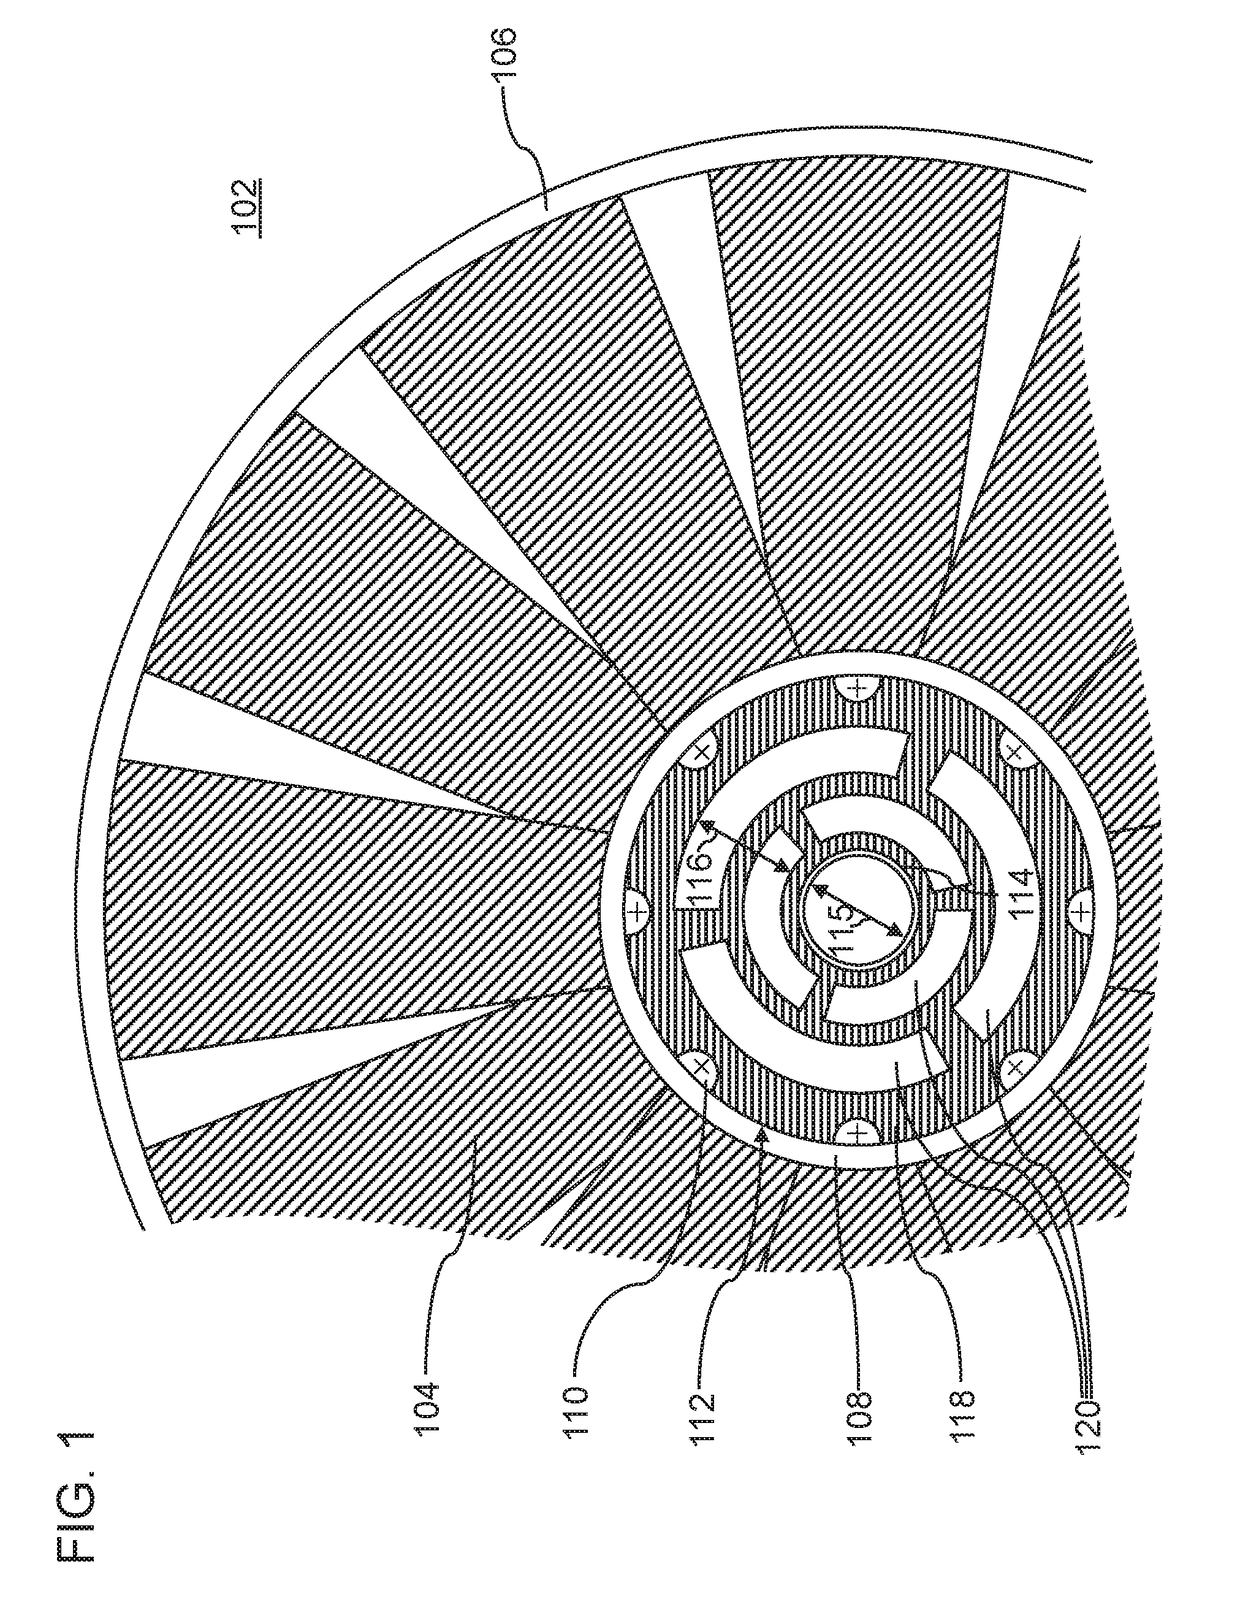 Axial fan wheel